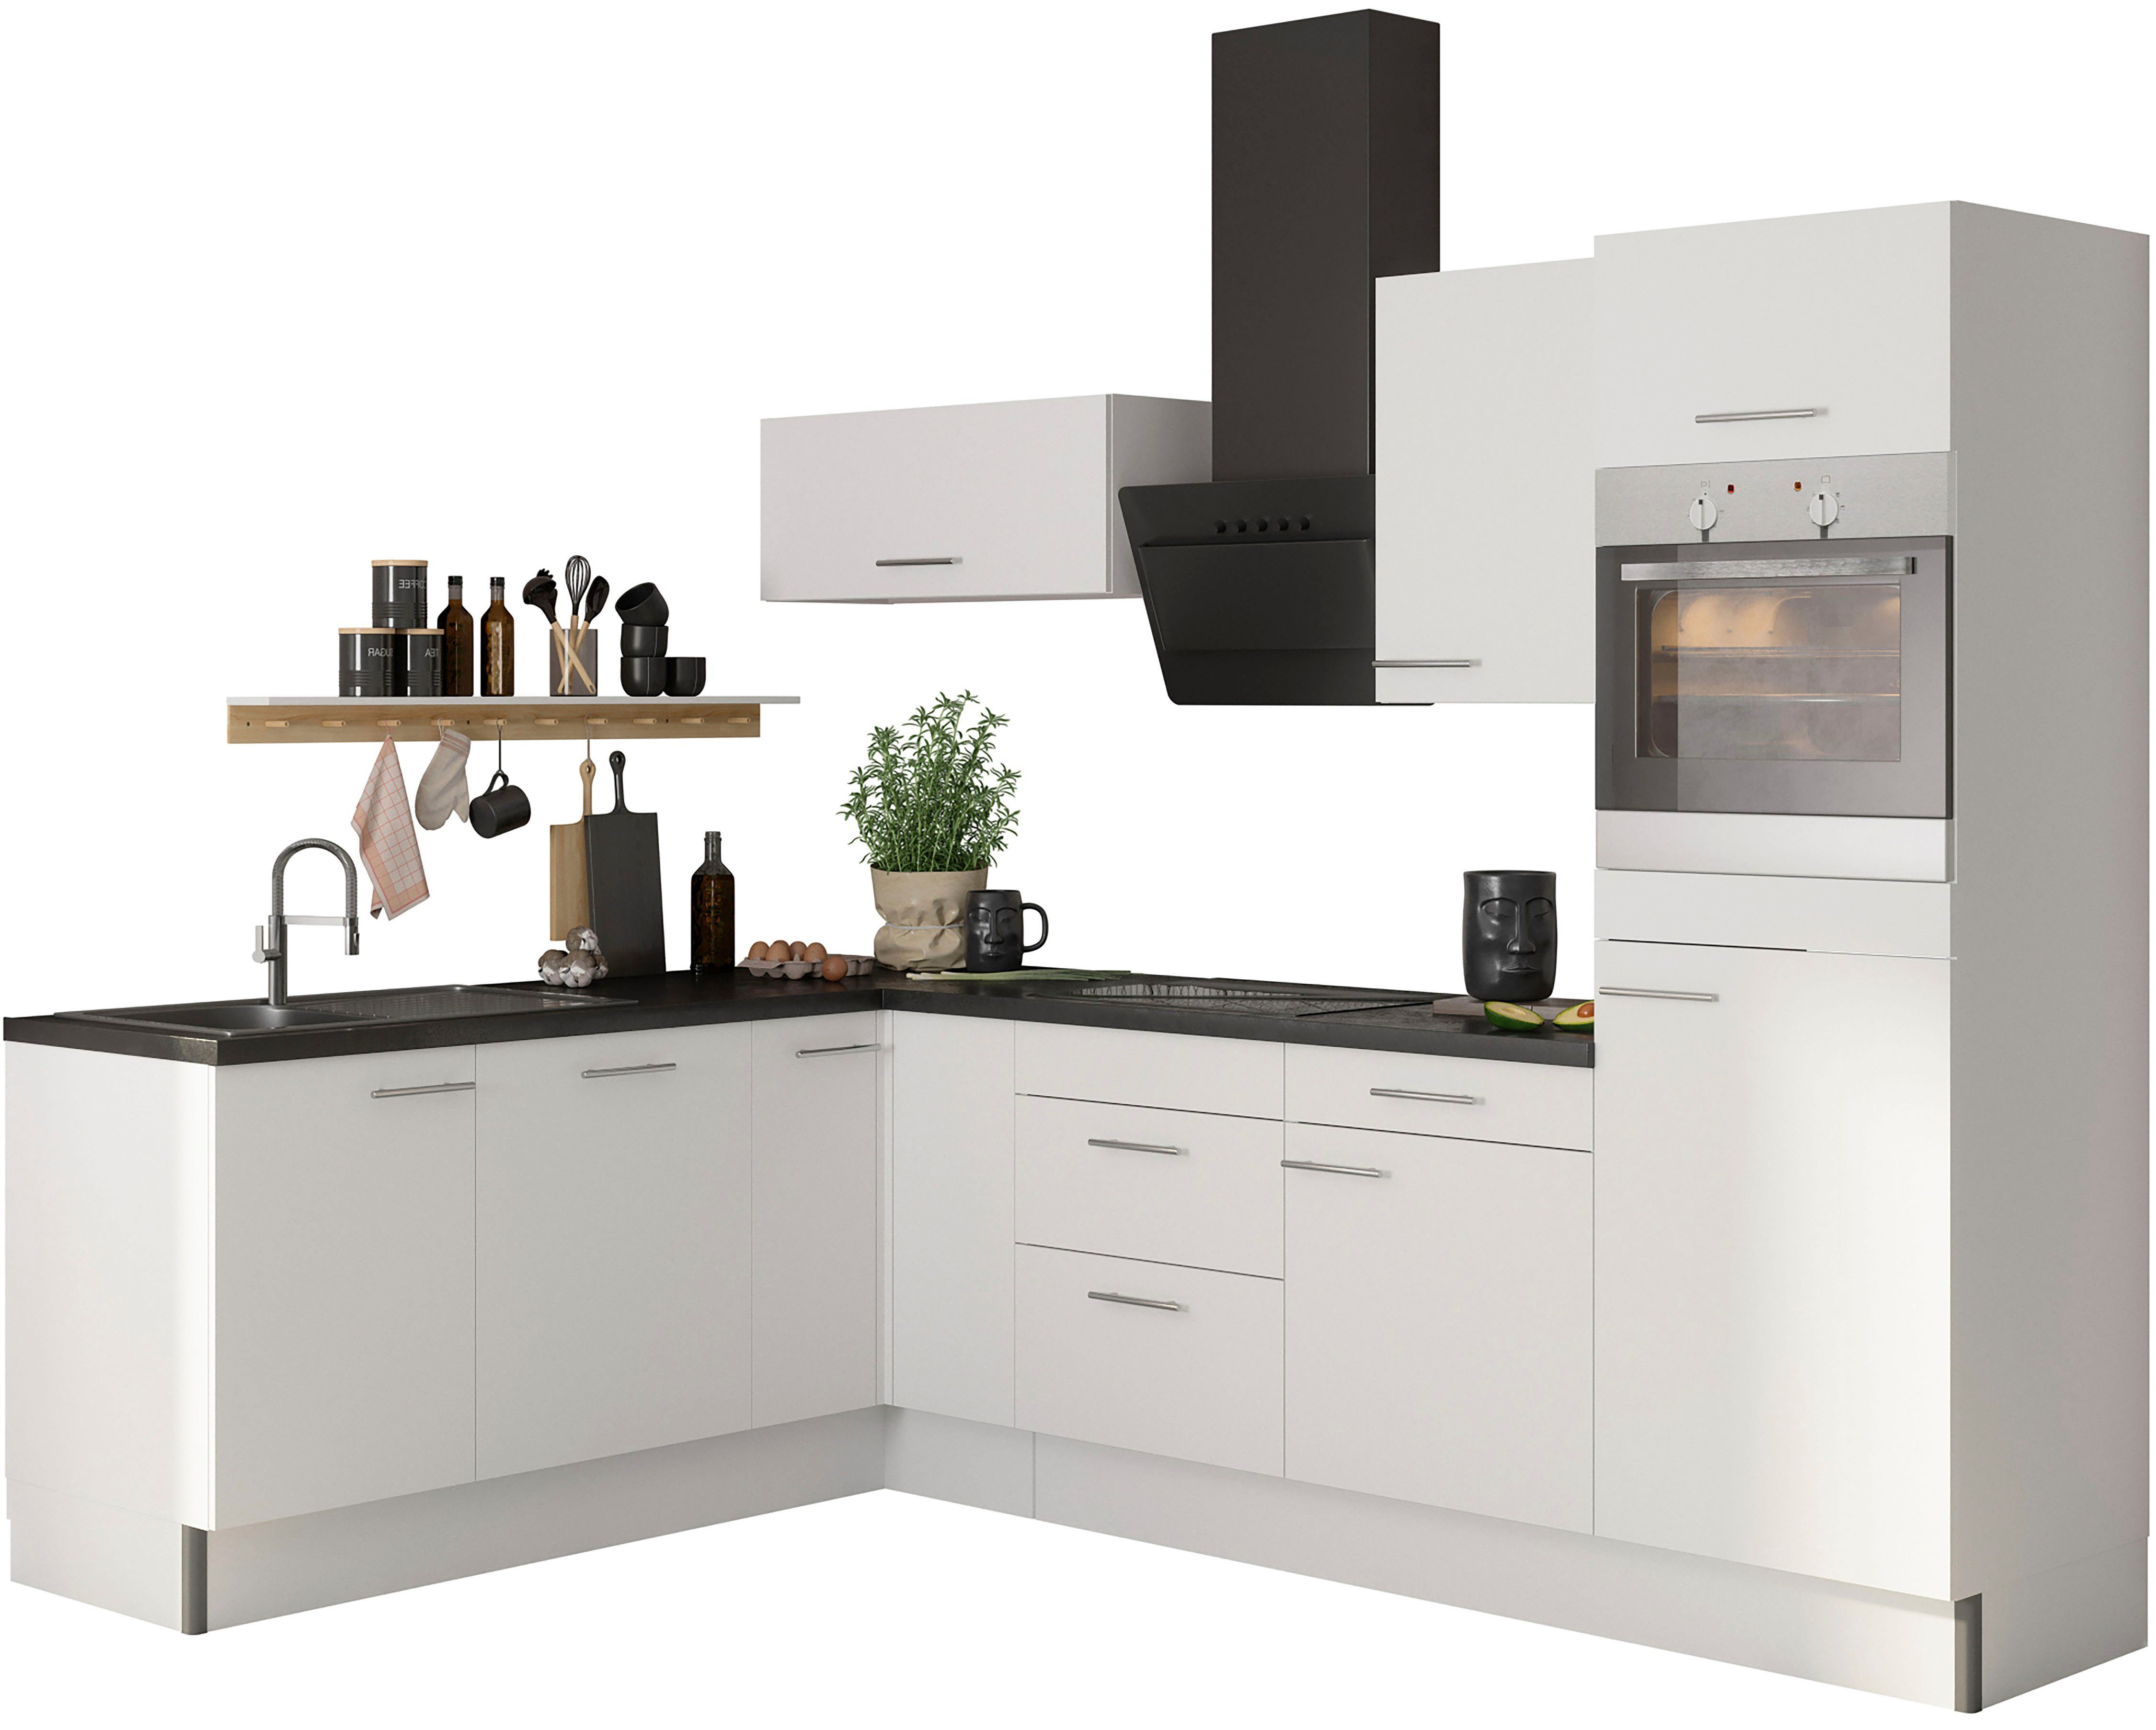 OPTIFIT Küche Klara, 200 x 270 cm breit, wahlweise mit E-Geräten,  Höhenverstellbare Stellfüße (10-17,6 cm)